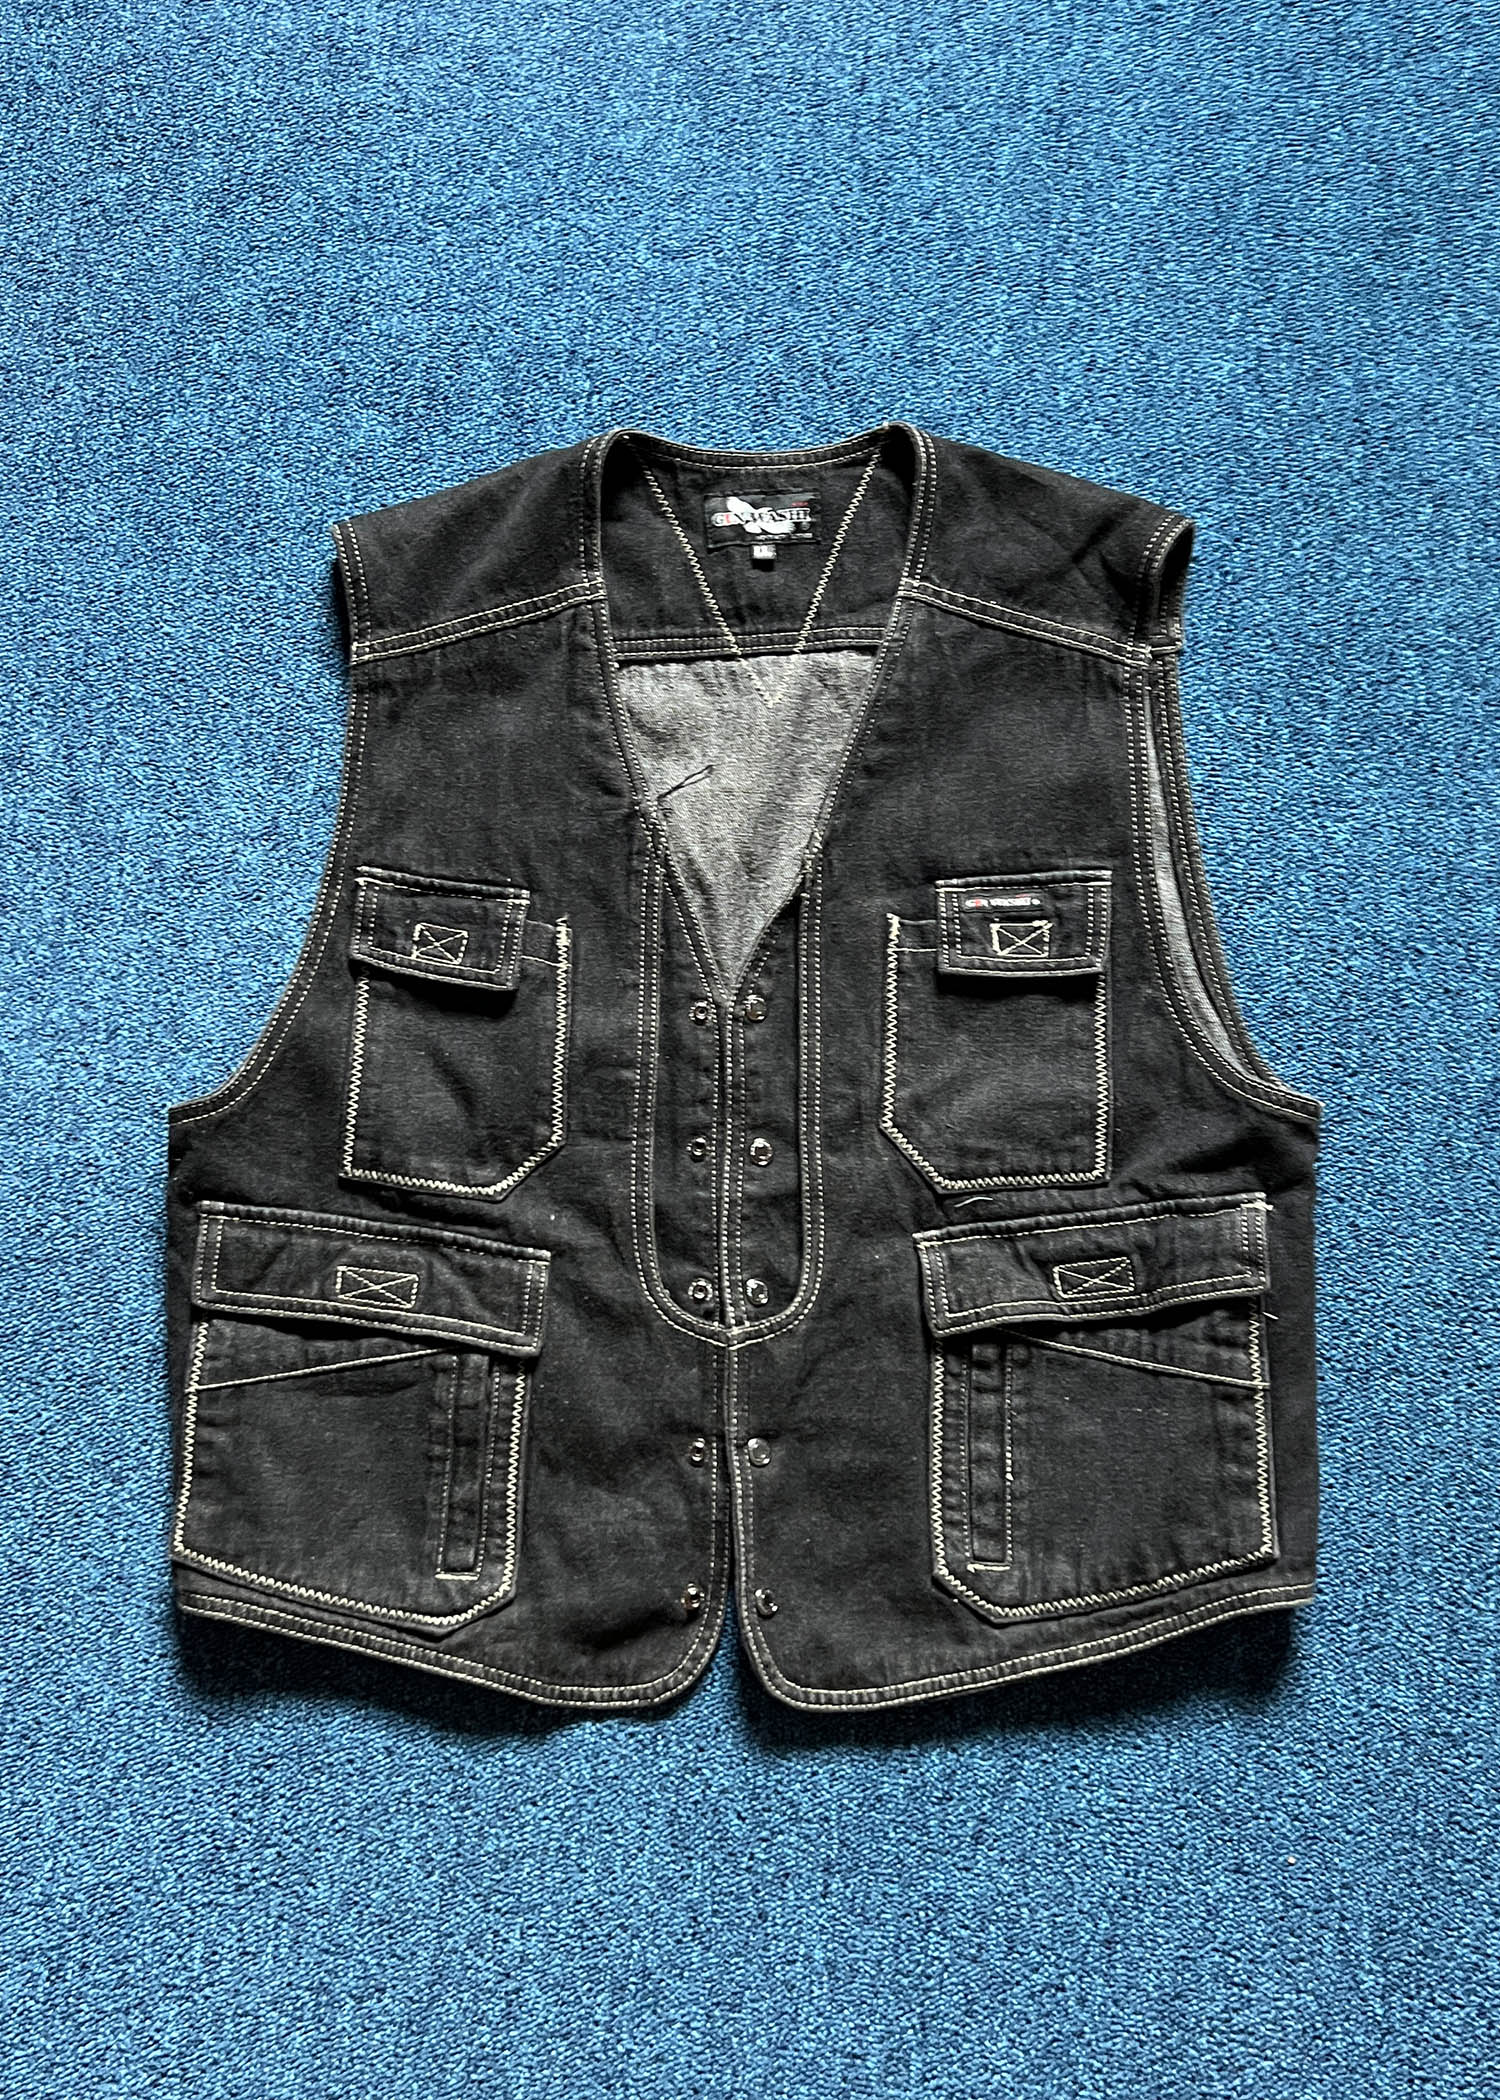 vintage work vest